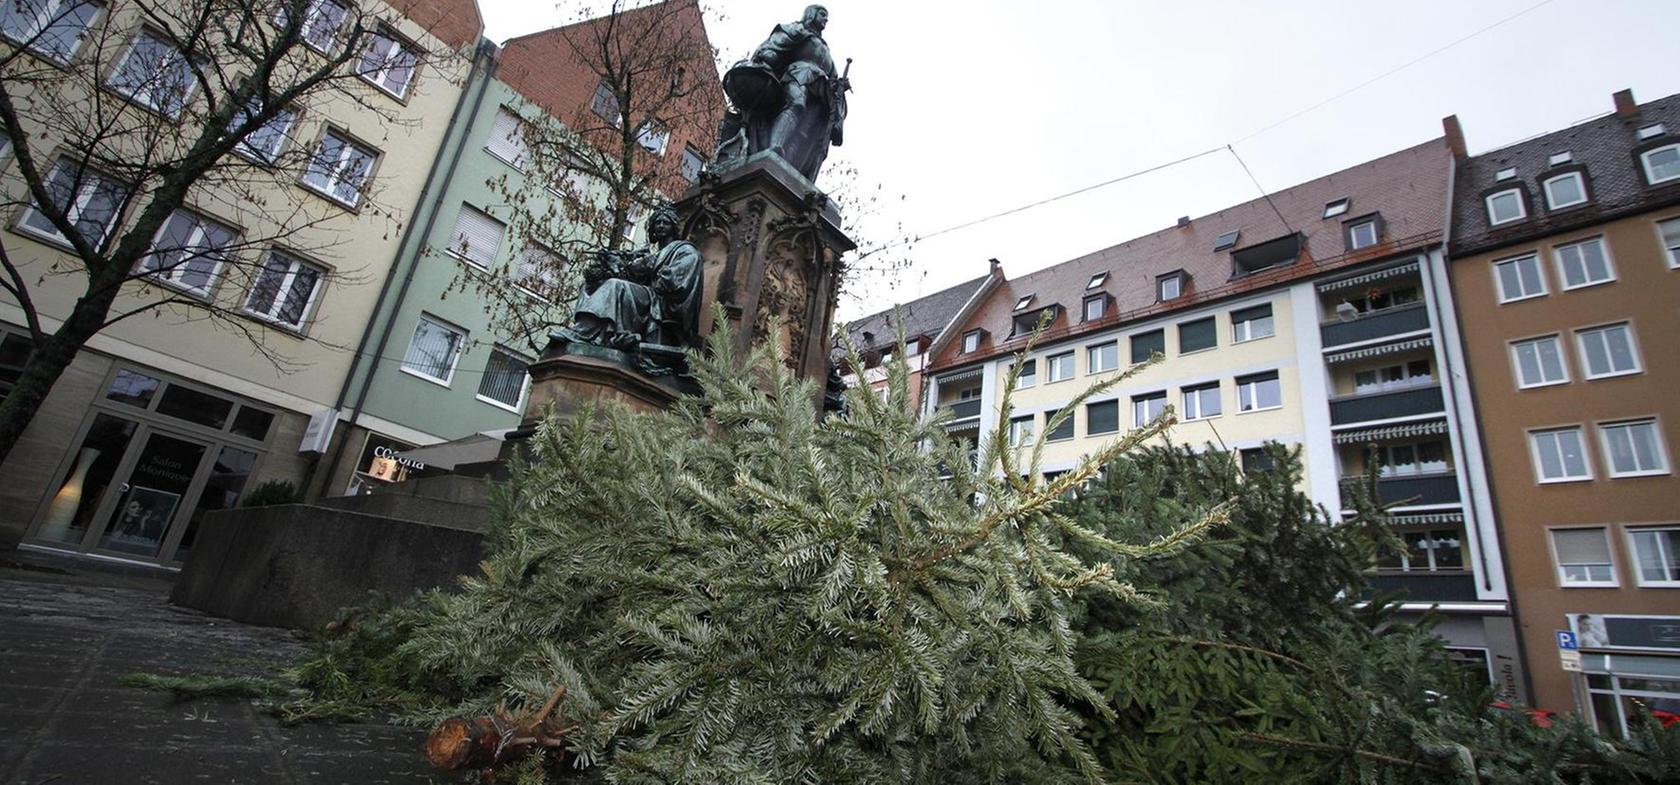 Ärger um wild entsorgte Christbäume in Nürnberg